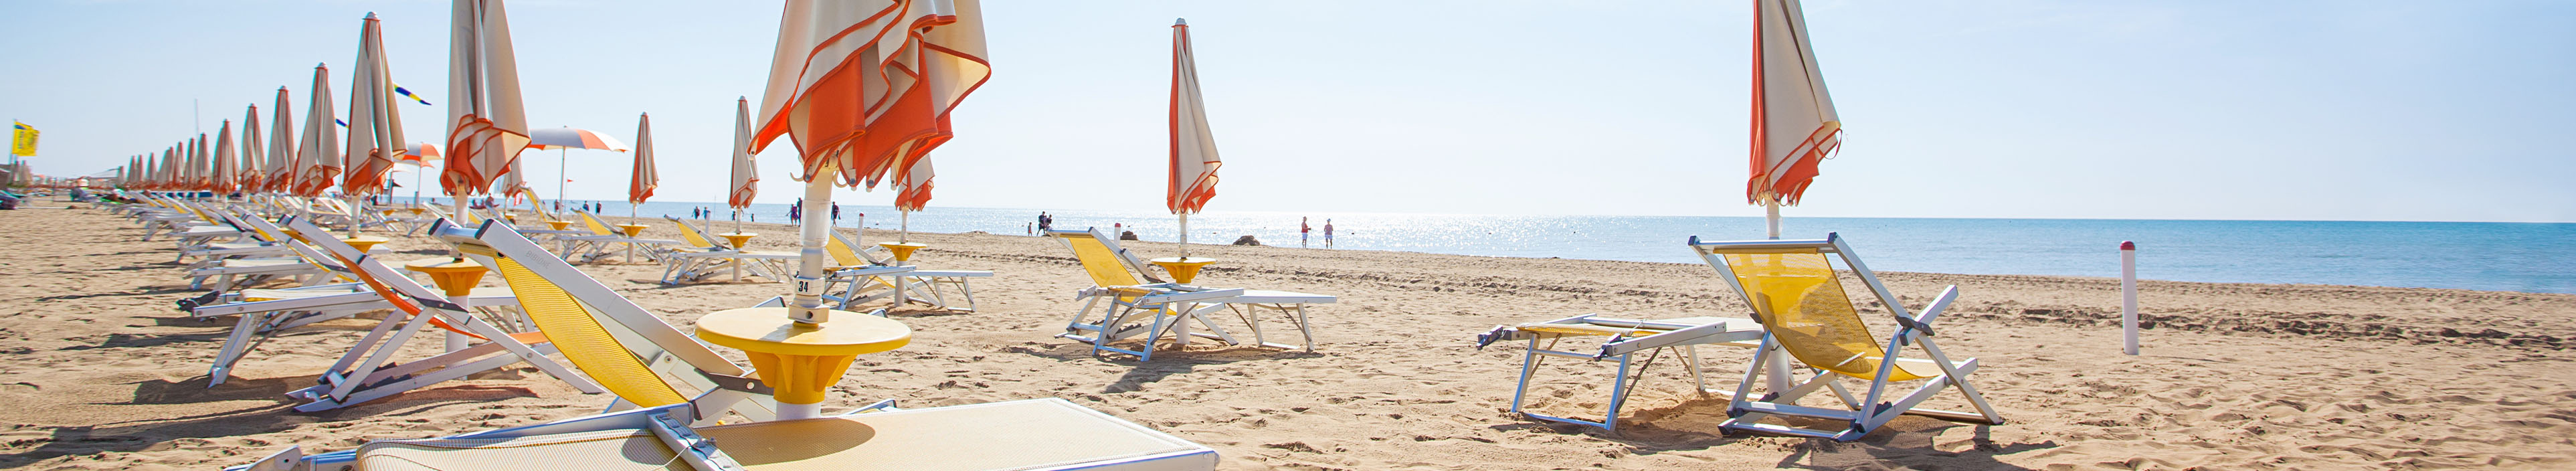 Sonnenschirme und Liegen am Strand von Bibione, Italien.